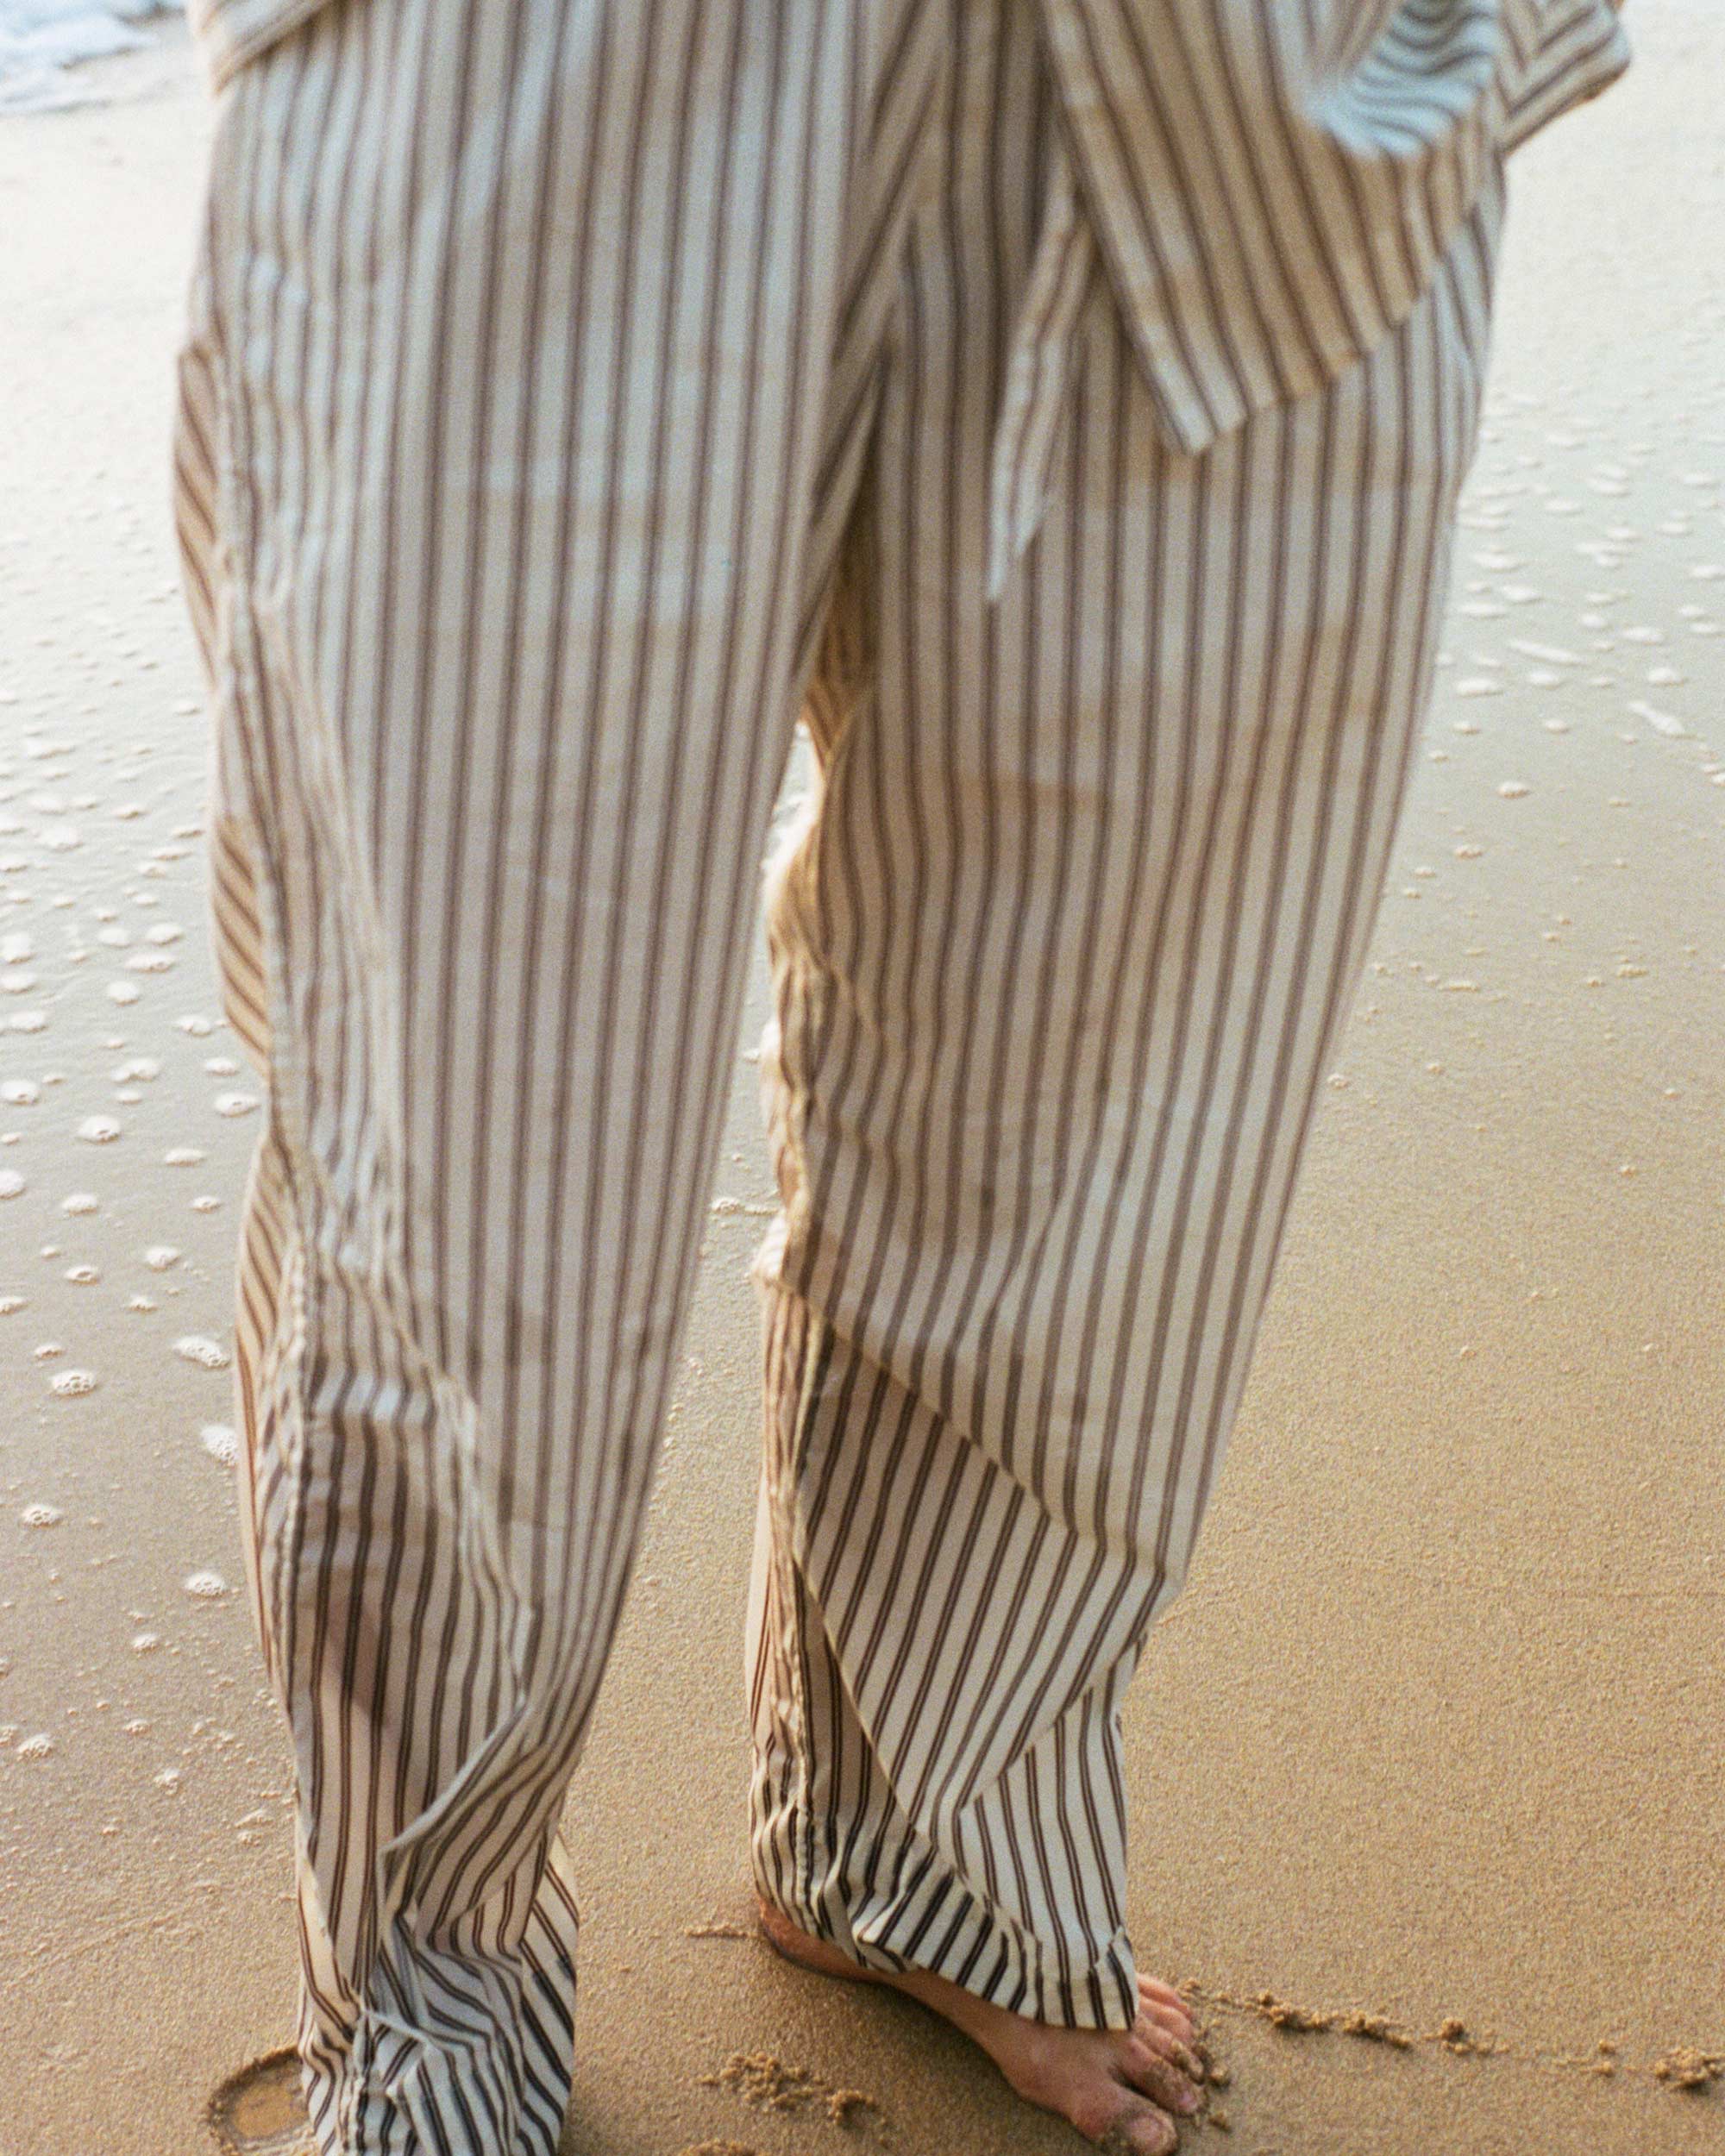 Hopper Stripes sleepwear